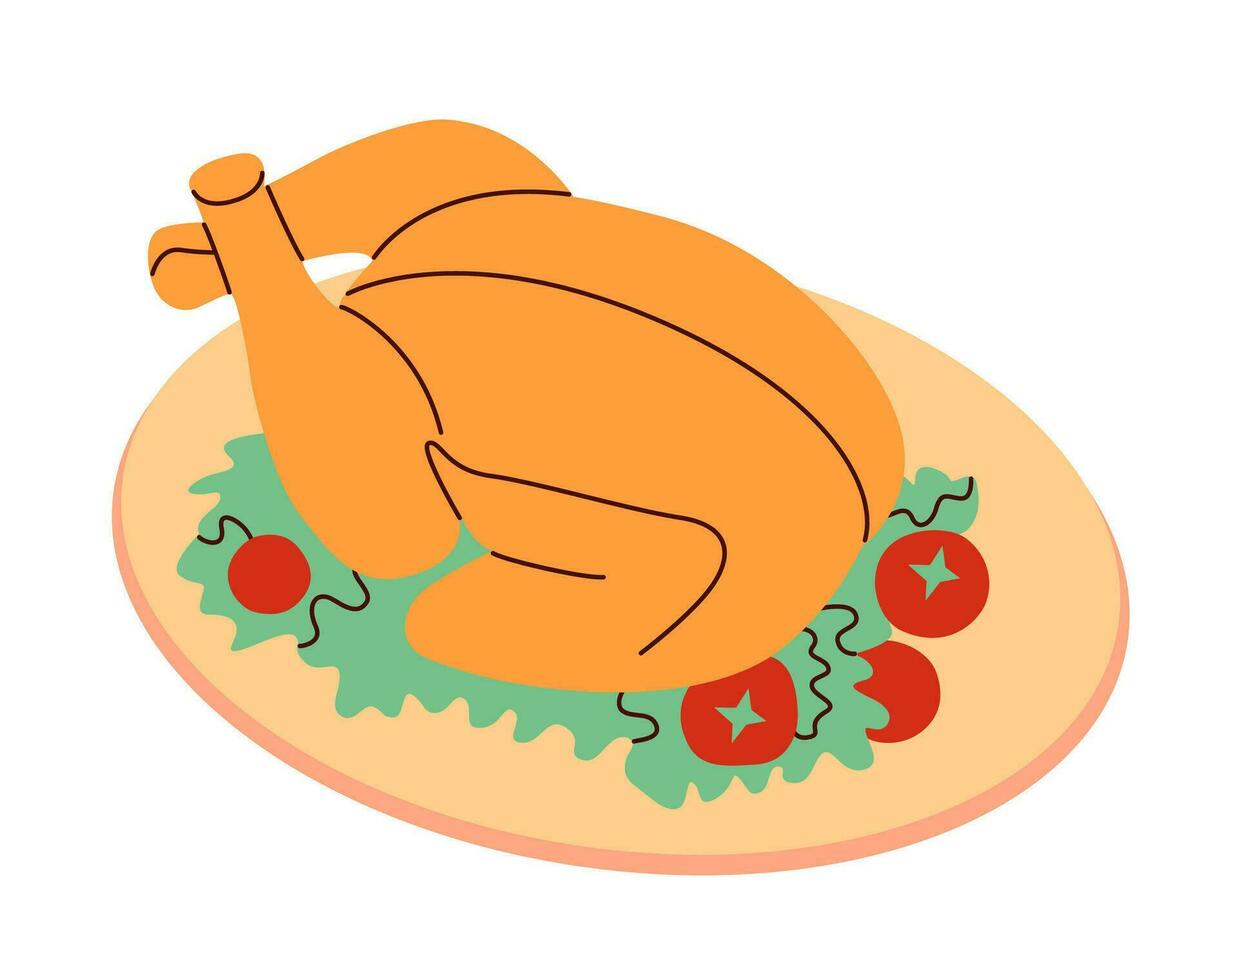 asado pavo, cocido cena plato. horneado A la parrilla todo pollo, festivo aves de corral, fiesta carne comida servido en lámina. plano vector ilustración.